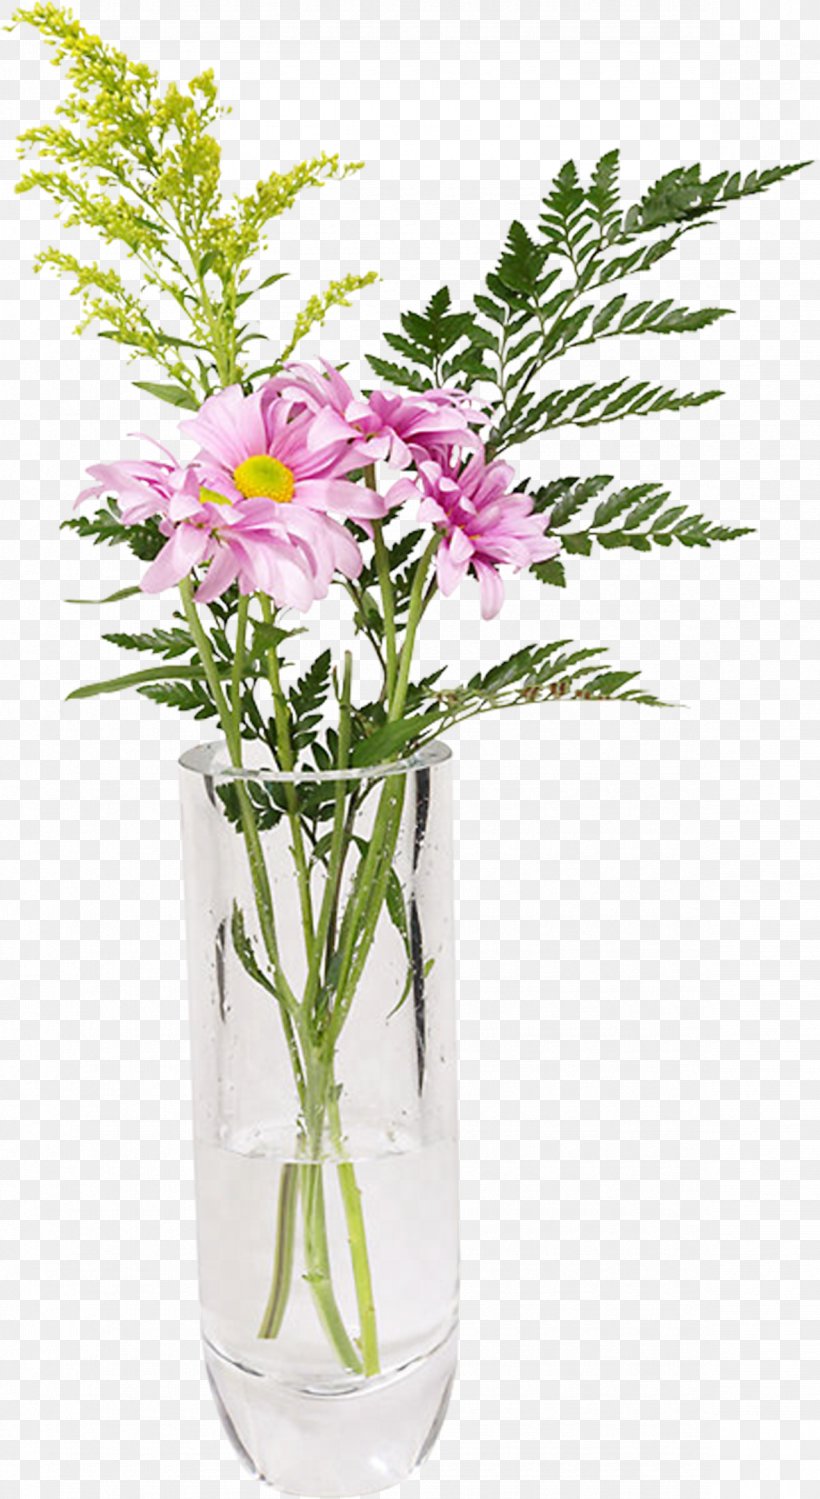 Flower Bouquet Vase Clip Art, PNG, 1181x2160px, Flower, Cut Flowers, Digital Image, Flora, Floral Design Download Free